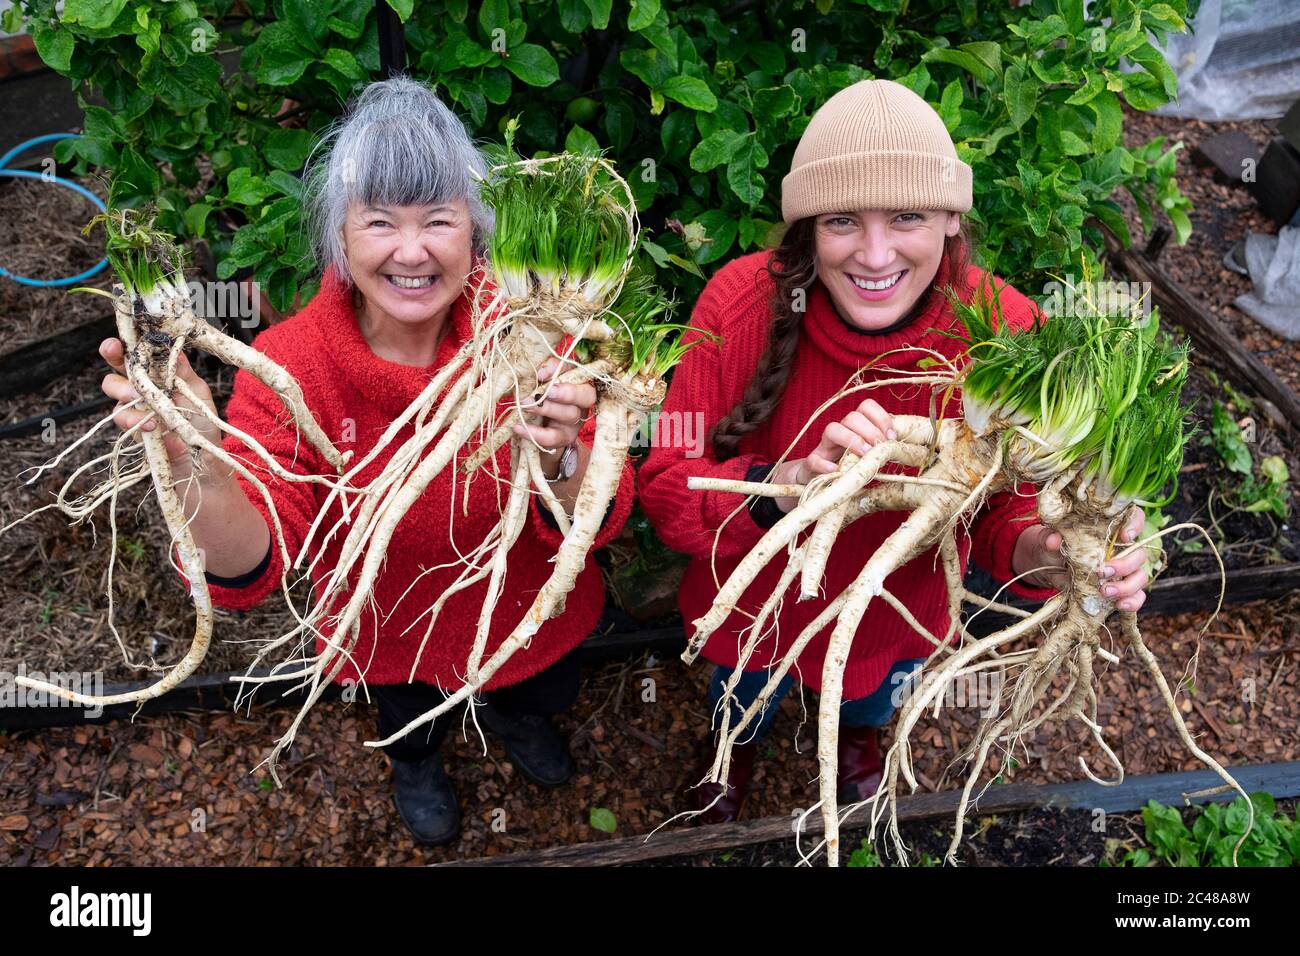 Deux agricultrices biologiques portent des chandails rouges avec une récolte de raifort fraîchement creusé Banque D'Images